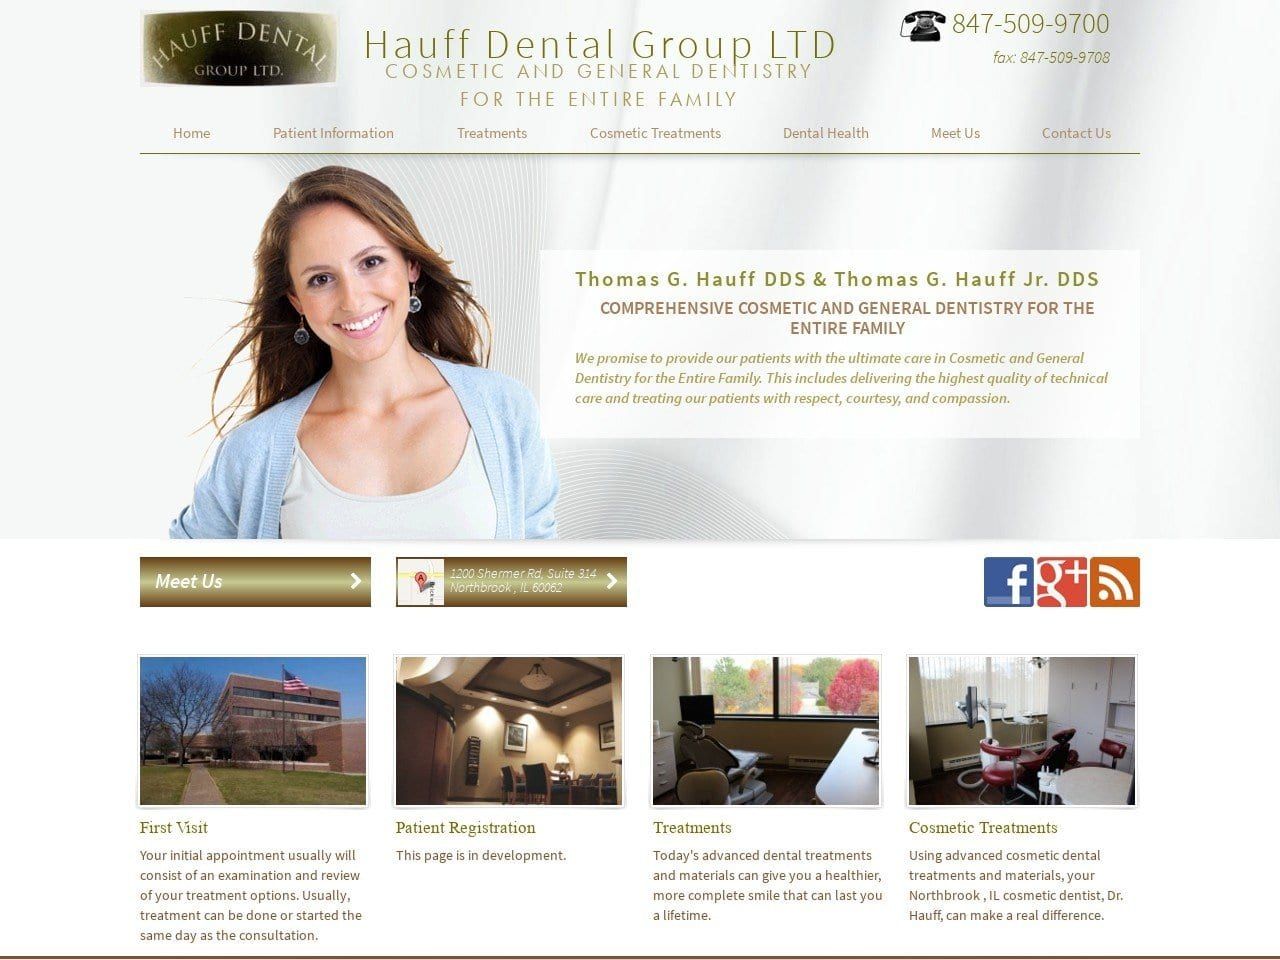 Hauff Dental Group Ltd Website Screenshot from hauffdental.com